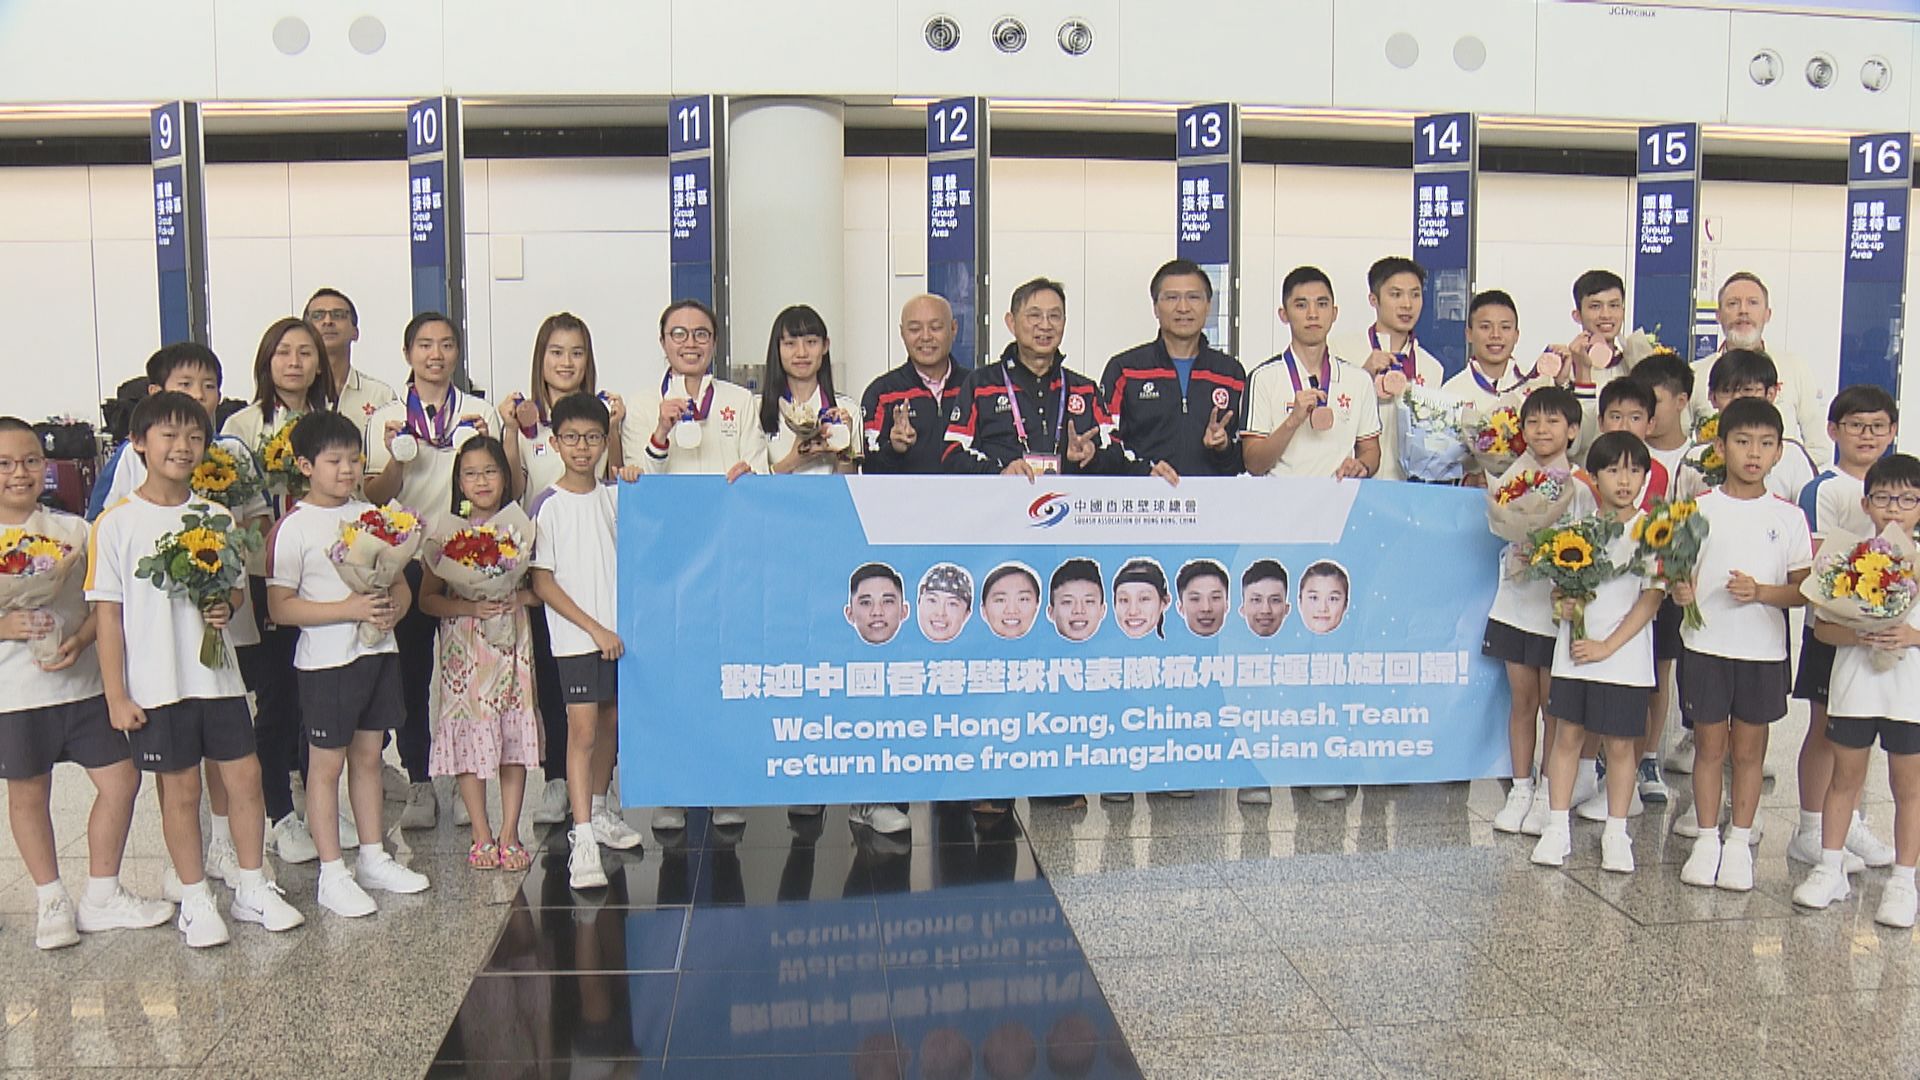 李家超祝賀香港運動員在杭州亞運取得驕人成績